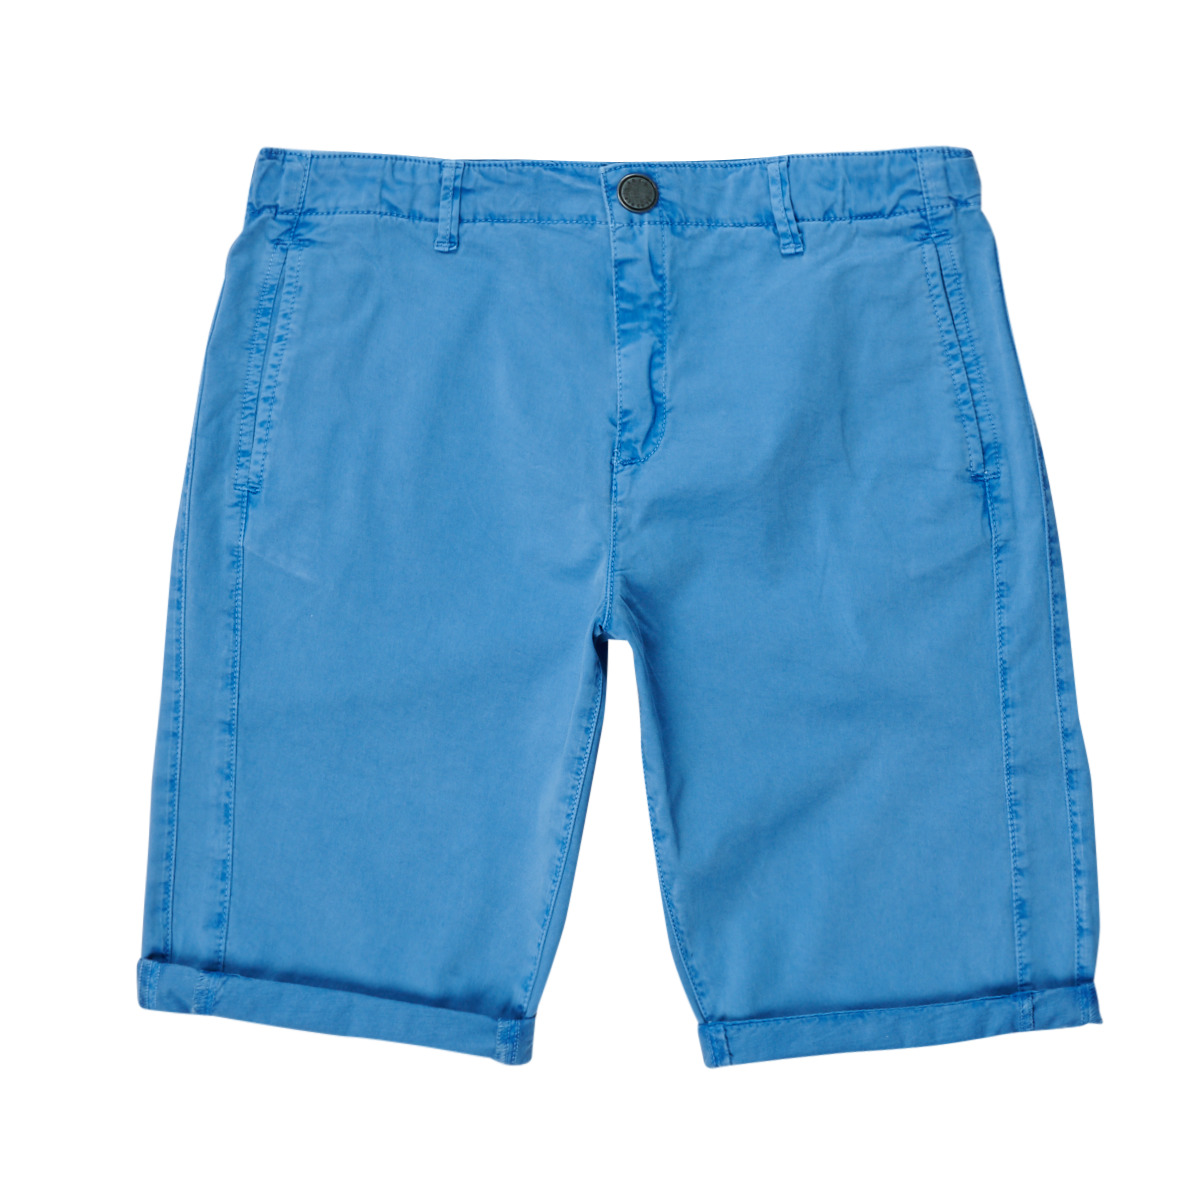 Vêtements Garçon dondup kids teen distressed denim shorts item JOUTIONSES Bleu